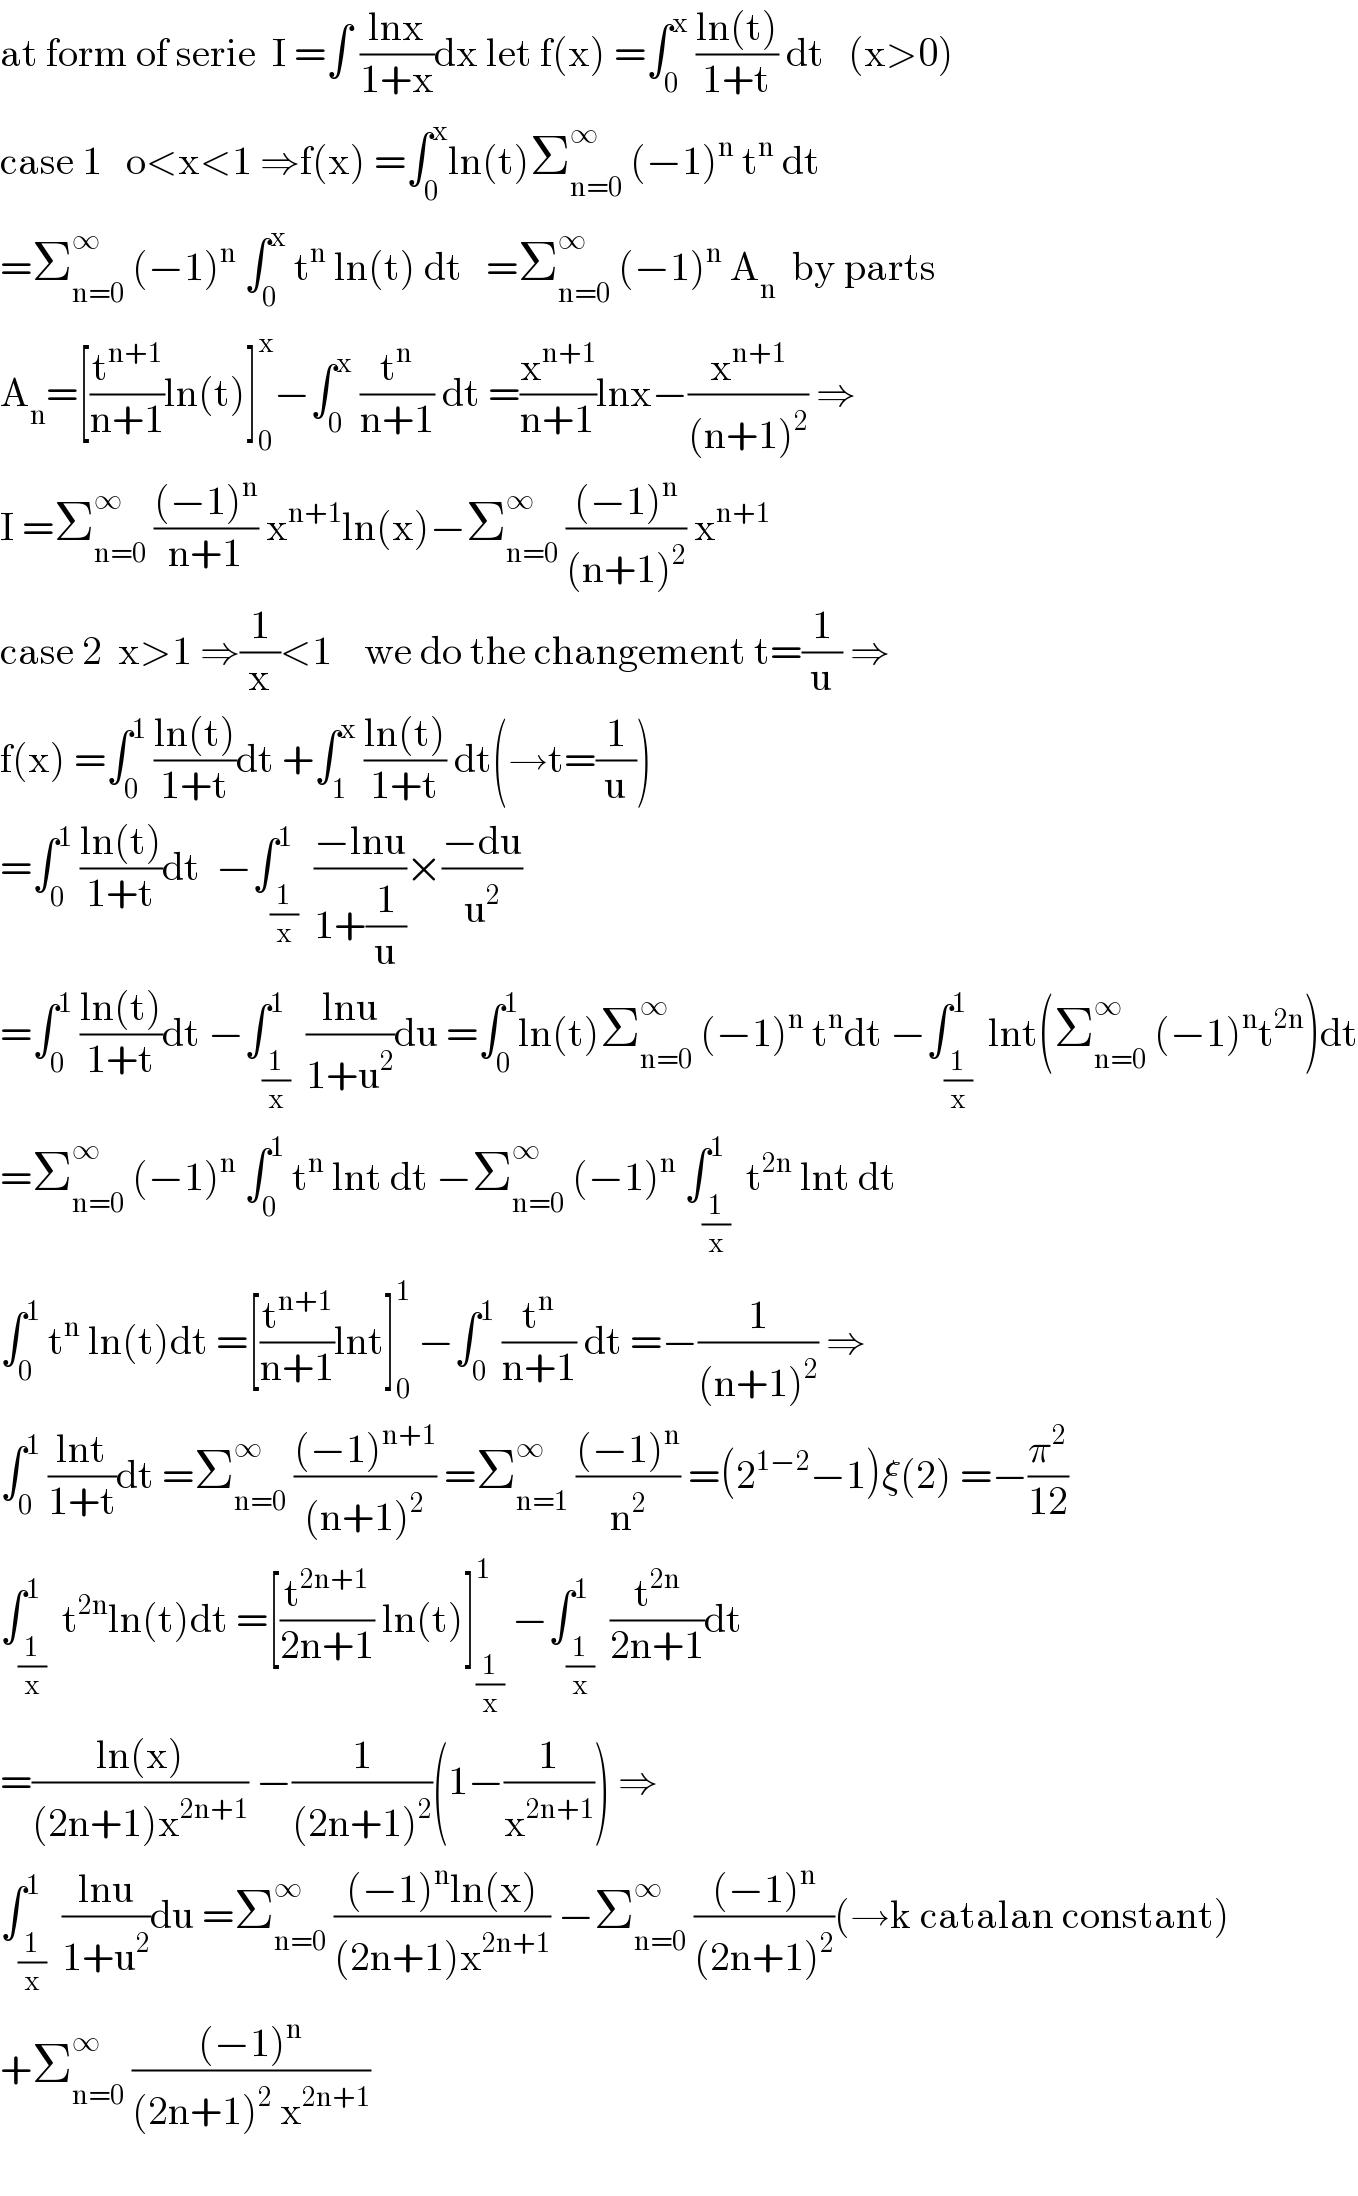 at form of serie  I =∫ ((lnx)/(1+x))dx let f(x) =∫_0 ^x  ((ln(t))/(1+t)) dt   (x>0)  case 1   o<x<1 ⇒f(x) =∫_0 ^x ln(t)Σ_(n=0) ^∞  (−1)^n  t^n  dt  =Σ_(n=0) ^∞  (−1)^n  ∫_0 ^x  t^n  ln(t) dt   =Σ_(n=0) ^∞  (−1)^n  A_n   by parts  A_n =[(t^(n+1) /(n+1))ln(t)]_0 ^x −∫_0 ^x  (t^n /(n+1)) dt =(x^(n+1) /(n+1))lnx−(x^(n+1) /((n+1)^2 )) ⇒  I =Σ_(n=0) ^∞  (((−1)^n )/(n+1)) x^(n+1) ln(x)−Σ_(n=0) ^∞  (((−1)^n )/((n+1)^2 )) x^(n+1)   case 2  x>1 ⇒(1/x)<1    we do the changement t=(1/u) ⇒  f(x) =∫_0 ^1  ((ln(t))/(1+t))dt +∫_1 ^x  ((ln(t))/(1+t)) dt(→t=(1/u))  =∫_0 ^1  ((ln(t))/(1+t))dt  −∫_(1/x) ^1  ((−lnu)/(1+(1/u)))×((−du)/u^2 )  =∫_0 ^1  ((ln(t))/(1+t))dt −∫_(1/x) ^1  ((lnu)/(1+u^2 ))du =∫_0 ^1 ln(t)Σ_(n=0) ^∞  (−1)^n  t^n dt −∫_(1/x) ^1  lnt(Σ_(n=0) ^∞  (−1)^n t^(2n) )dt  =Σ_(n=0) ^∞  (−1)^n  ∫_0 ^1  t^n  lnt dt −Σ_(n=0) ^∞  (−1)^n  ∫_(1/x) ^1  t^(2n)  lnt dt  ∫_0 ^1  t^n  ln(t)dt =[(t^(n+1) /(n+1))lnt]_0 ^1  −∫_0 ^1  (t^n /(n+1)) dt =−(1/((n+1)^2 )) ⇒  ∫_0 ^1  ((lnt)/(1+t))dt =Σ_(n=0) ^∞  (((−1)^(n+1) )/((n+1)^2 )) =Σ_(n=1) ^∞  (((−1)^n )/n^2 ) =(2^(1−2) −1)ξ(2) =−(π^2 /(12))  ∫_(1/x) ^1  t^(2n) ln(t)dt =[(t^(2n+1) /(2n+1)) ln(t)]_(1/x) ^1  −∫_(1/x) ^1  (t^(2n) /(2n+1))dt  =((ln(x))/((2n+1)x^(2n+1) )) −(1/((2n+1)^2 ))(1−(1/x^(2n+1) )) ⇒  ∫_(1/x) ^1  ((lnu)/(1+u^2 ))du =Σ_(n=0) ^∞  (((−1)^n ln(x))/((2n+1)x^(2n+1) )) −Σ_(n=0) ^∞  (((−1)^n )/((2n+1)^2 ))(→k catalan constant)  +Σ_(n=0) ^∞  (((−1)^n )/((2n+1)^2  x^(2n+1) ))    